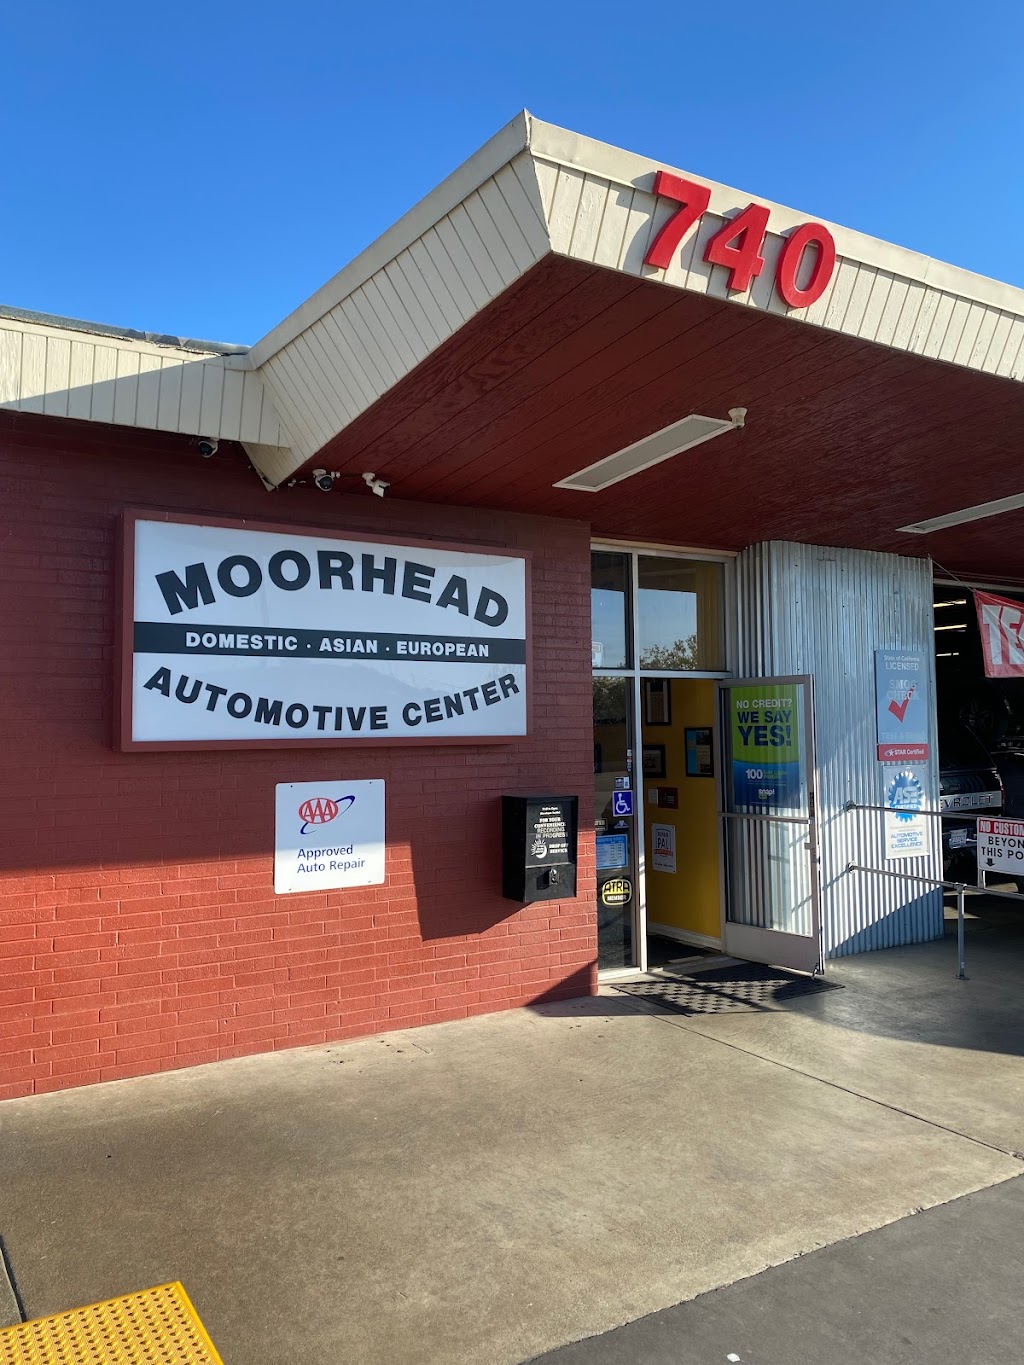 Moorhead Automotive Center | 740 N Texas St, Fairfield, CA 94533 | Phone: (707) 429-4100